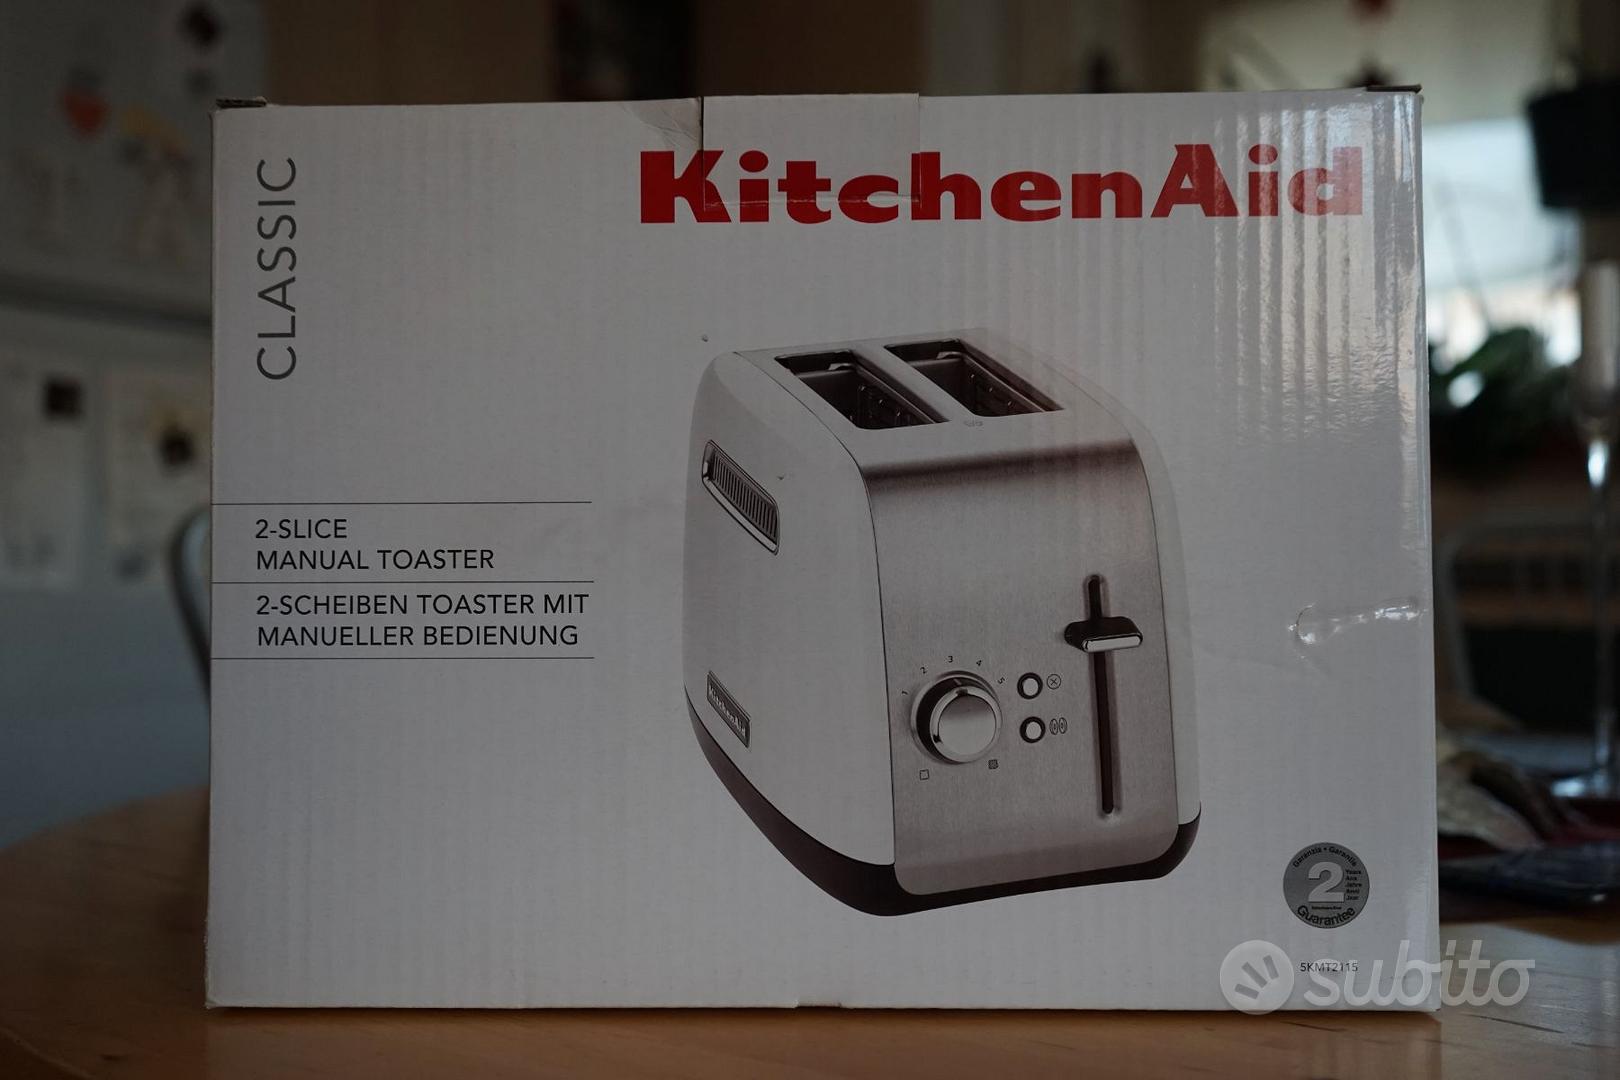 Tostapane KitchenAid NUOVO - Elettrodomestici In vendita a Belluno